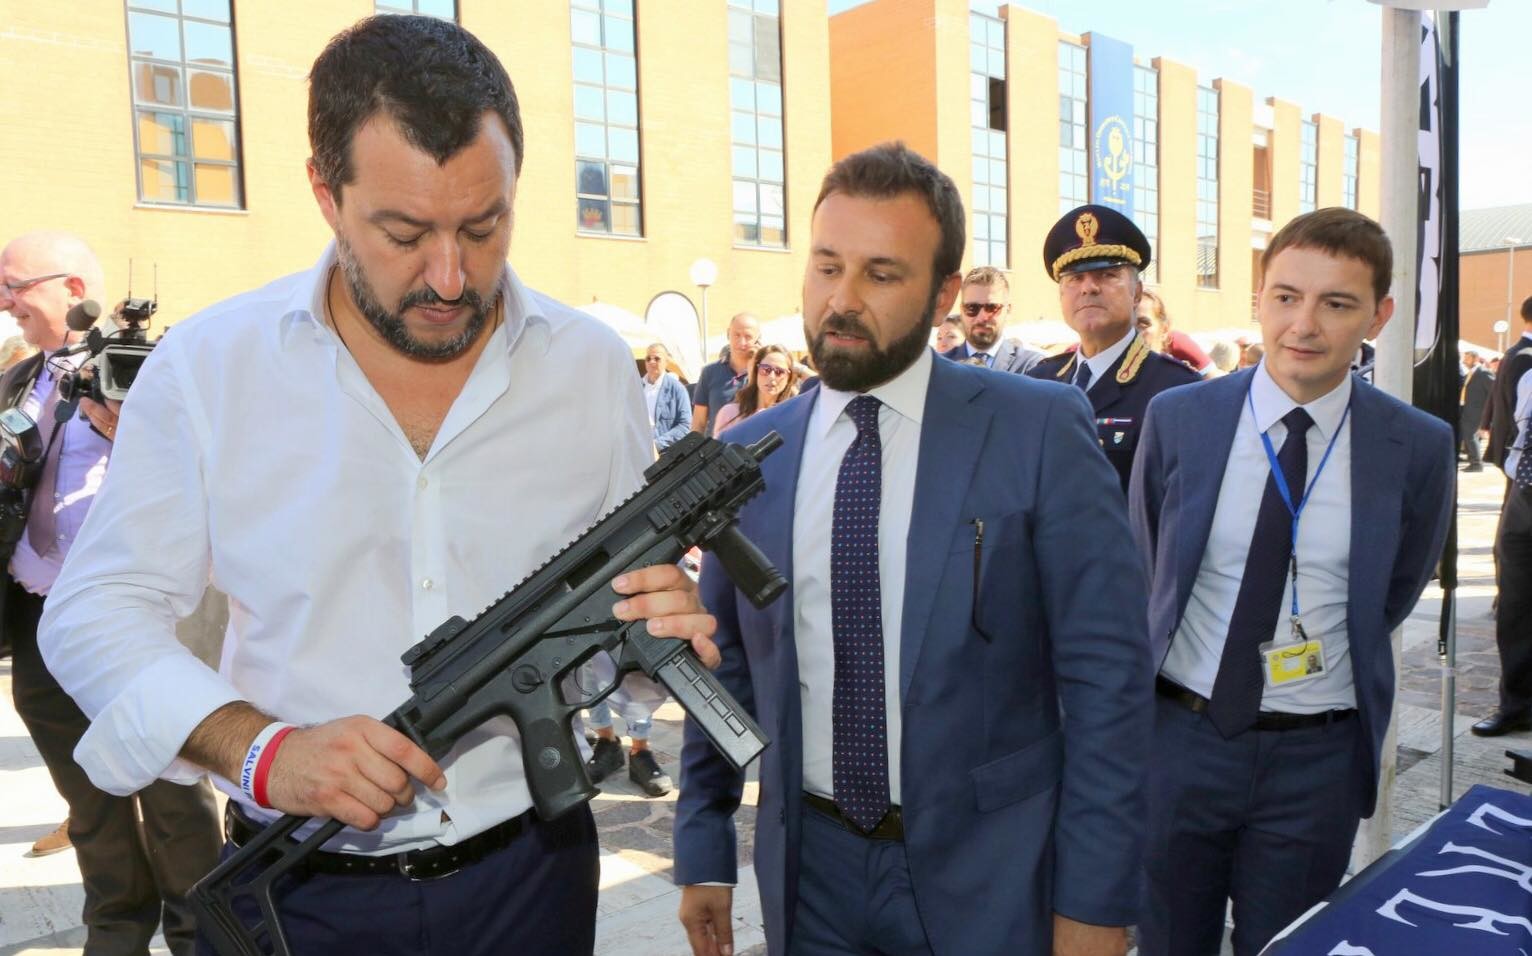 “Fango sulla Lega, ma noi siamo armati”: ecco Salvini con il mitra sui social